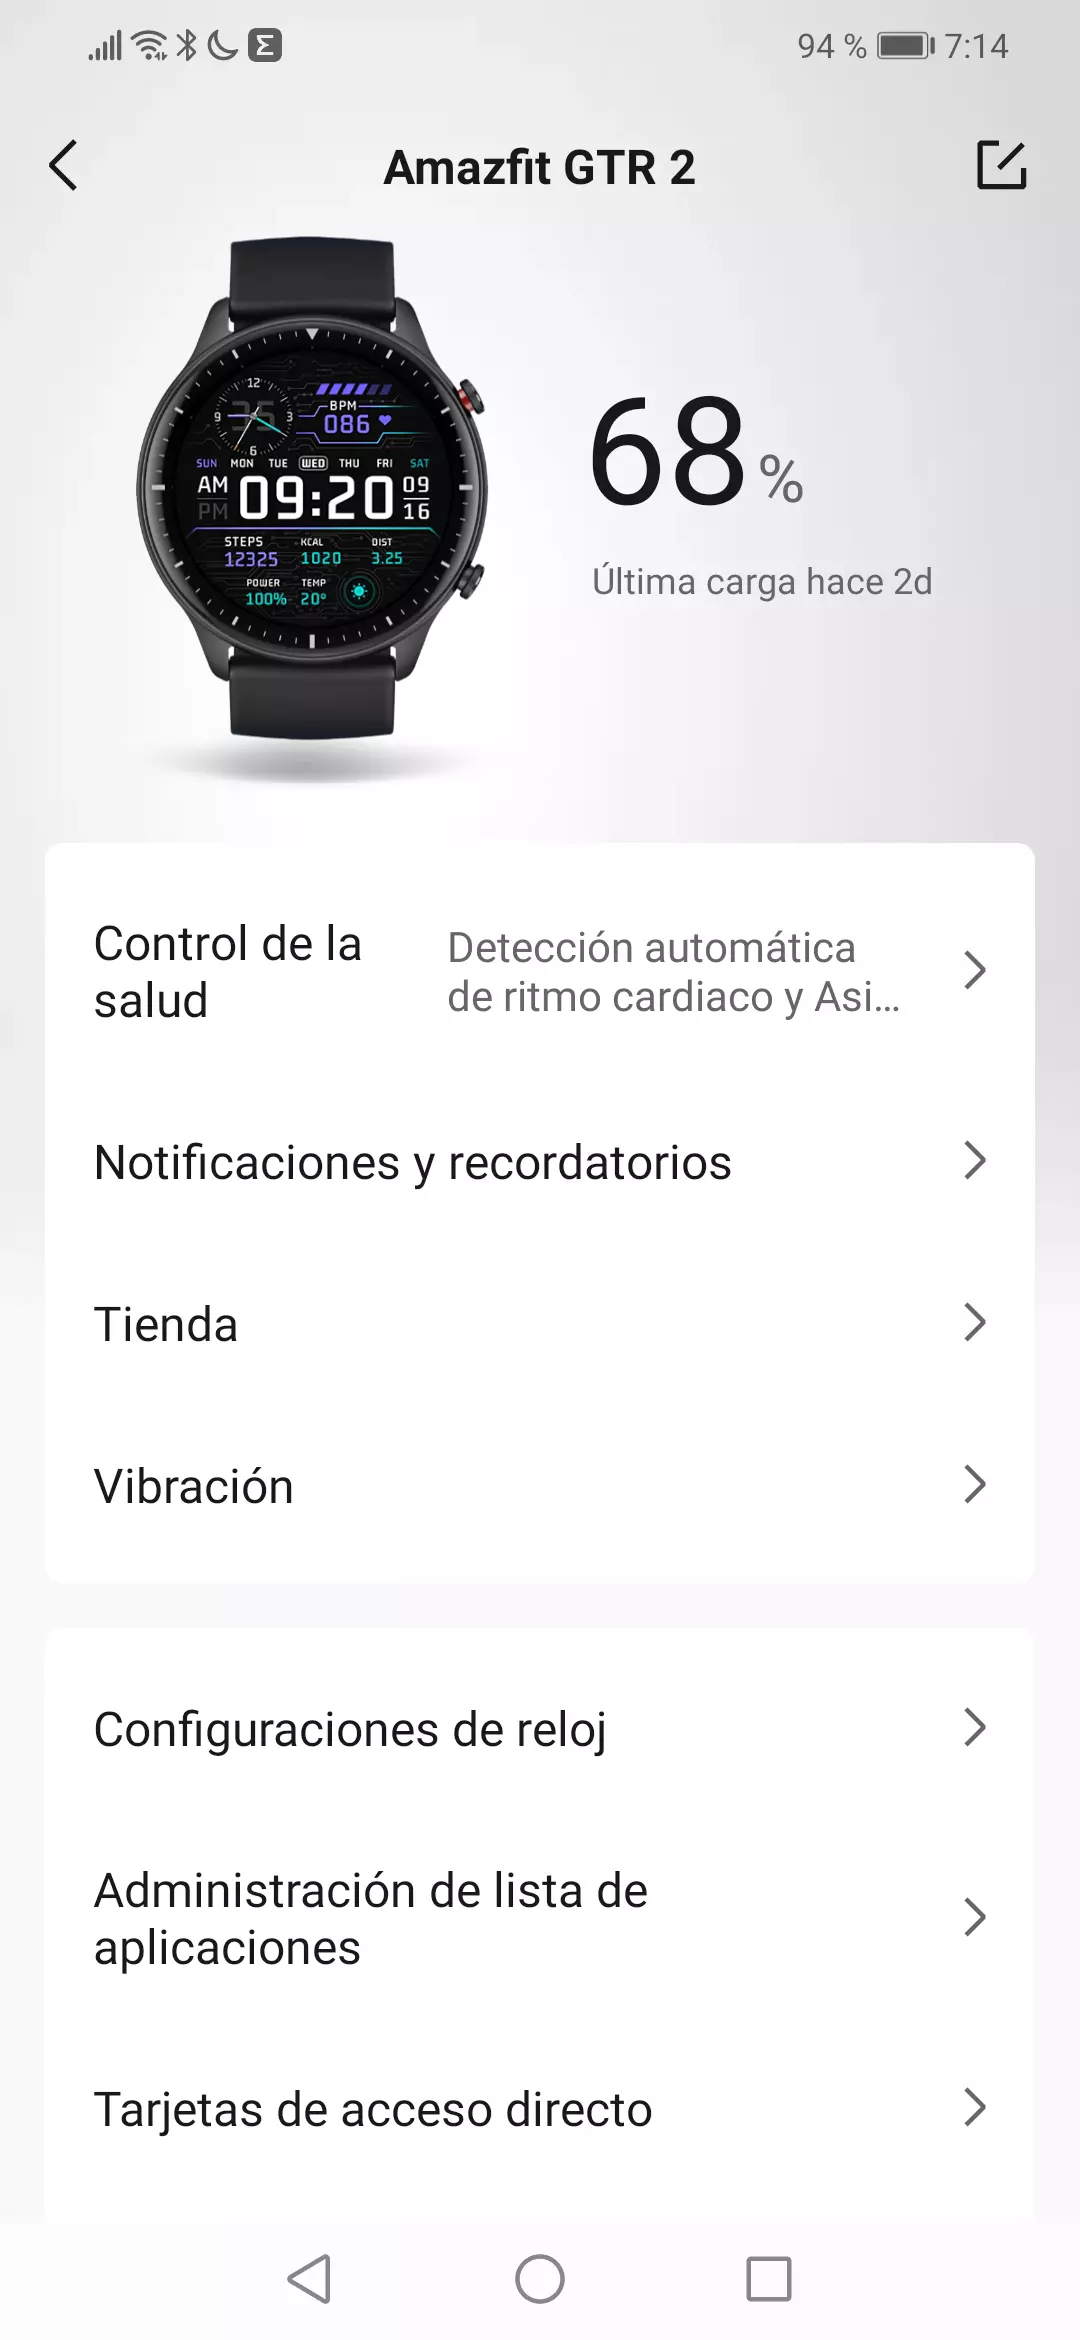 Opciones del dispositivo Smartwatch Amazfit GTR 2 desde la app Zepp del Smartphone